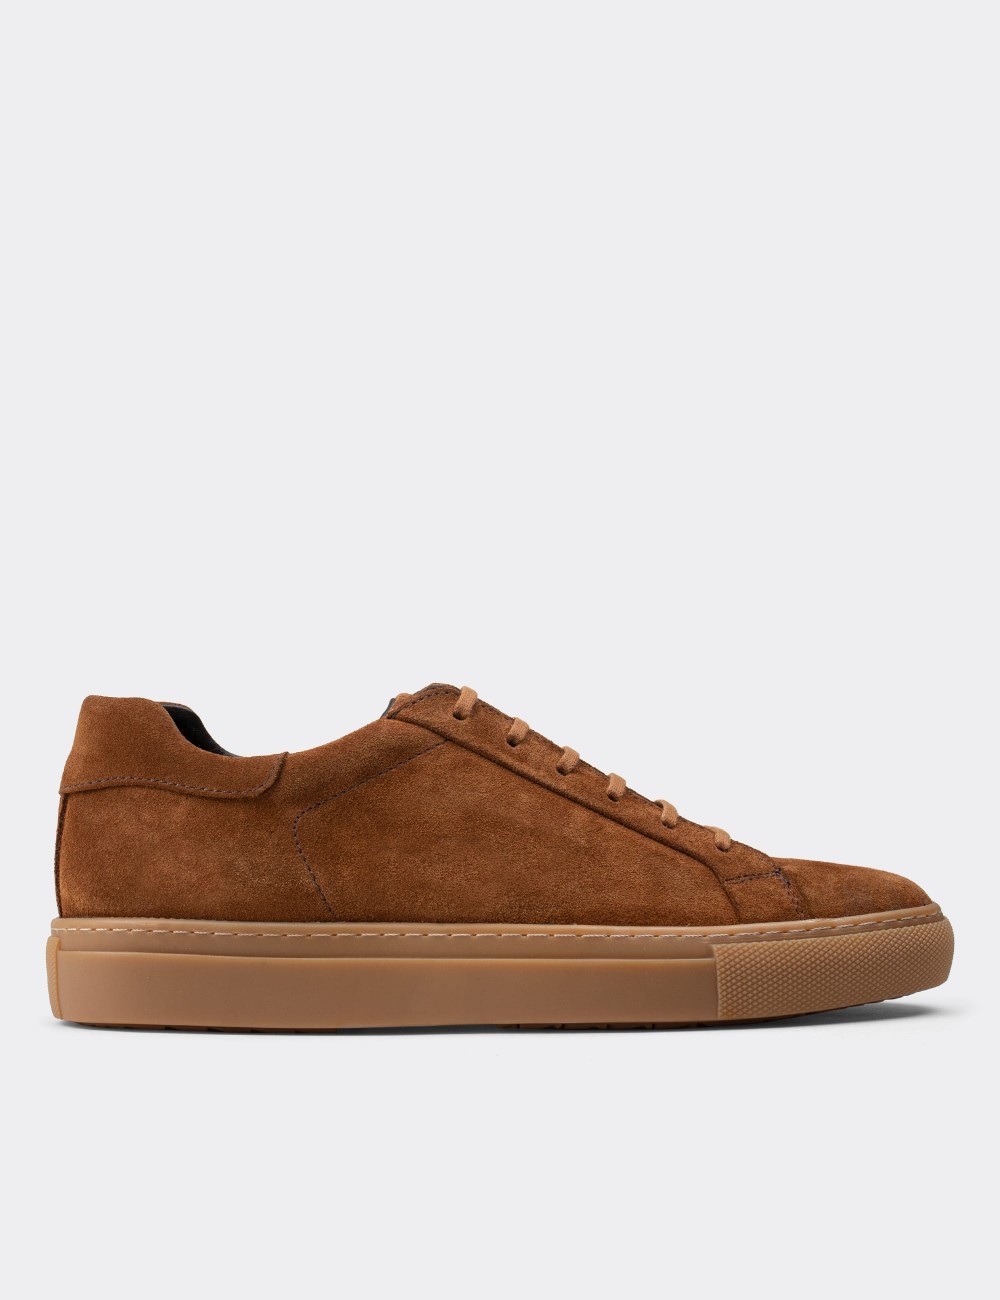 Brown Suede Leather Sneakers - Deery